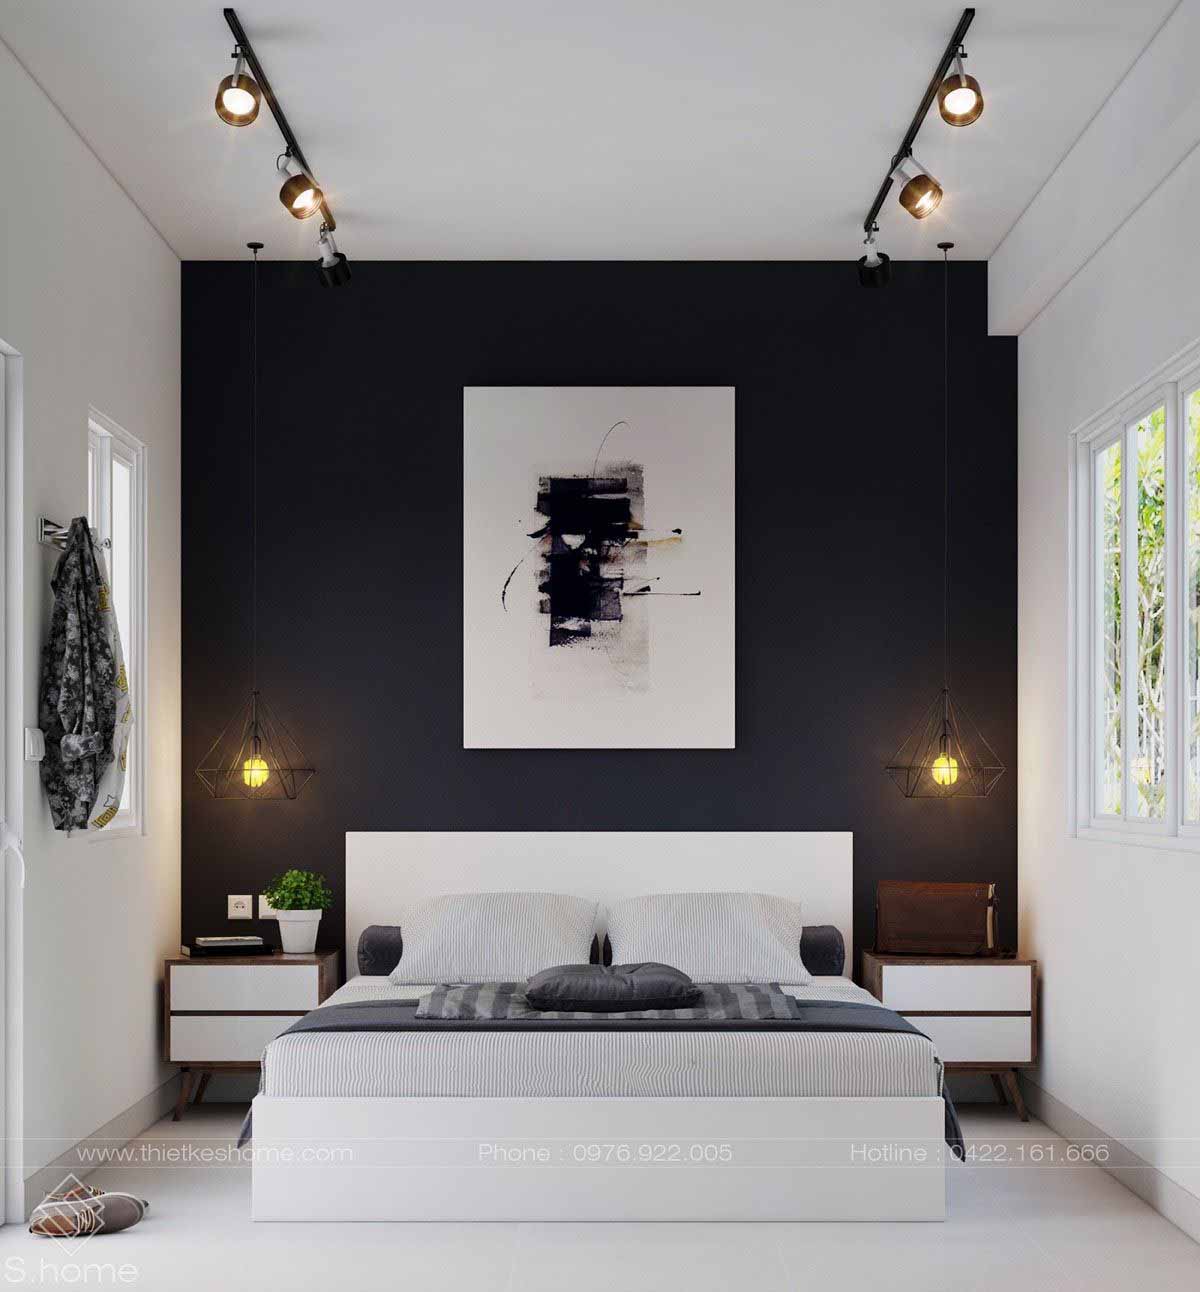 دکوراسیون سفید مشکی اتاق خواب مدرن با دیوار تاکیدی مشکی و تخت خواب چوبی سفید